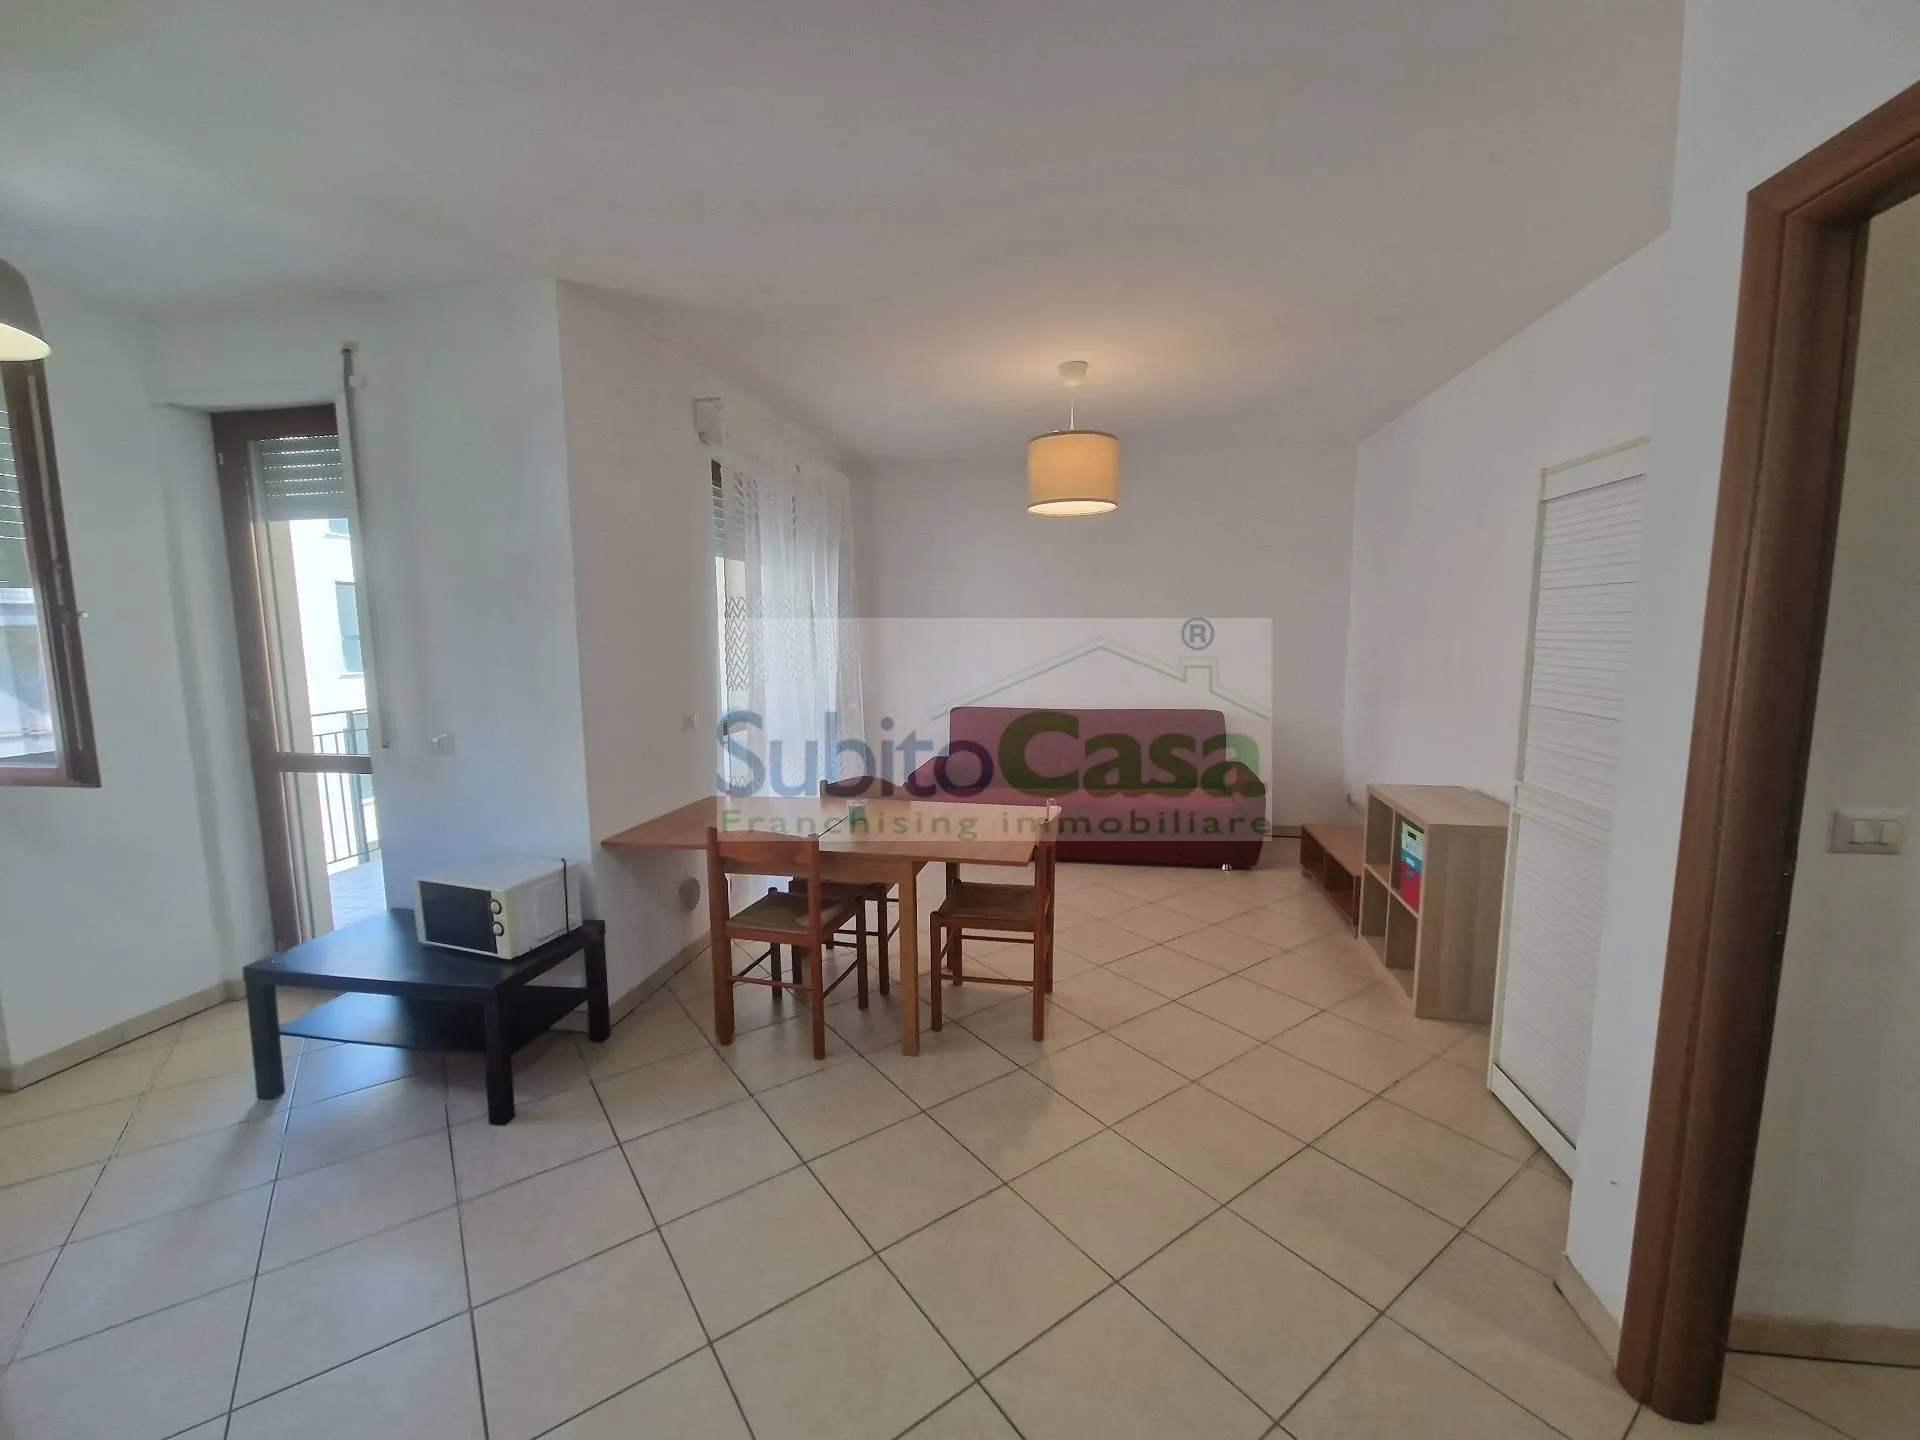 Immagine per Appartamento in affitto a Chieti Via Spalato